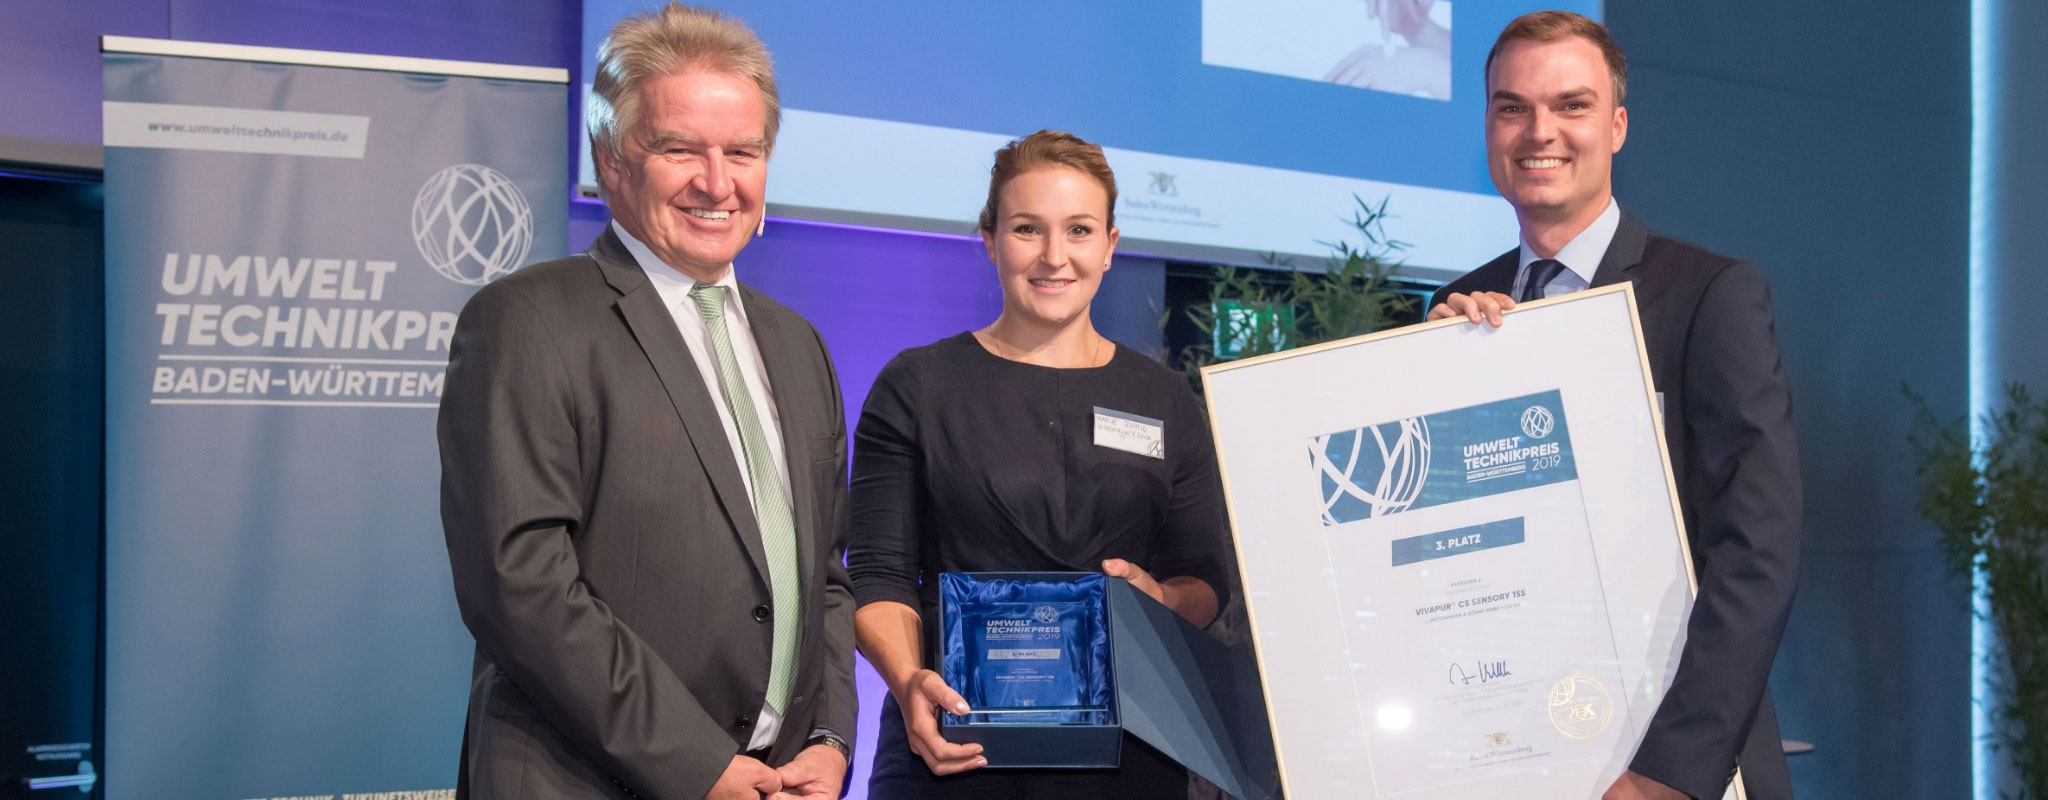 Le JRS reçoit le prix de l'écotechnologie du Bade-Wurtemberg 2019